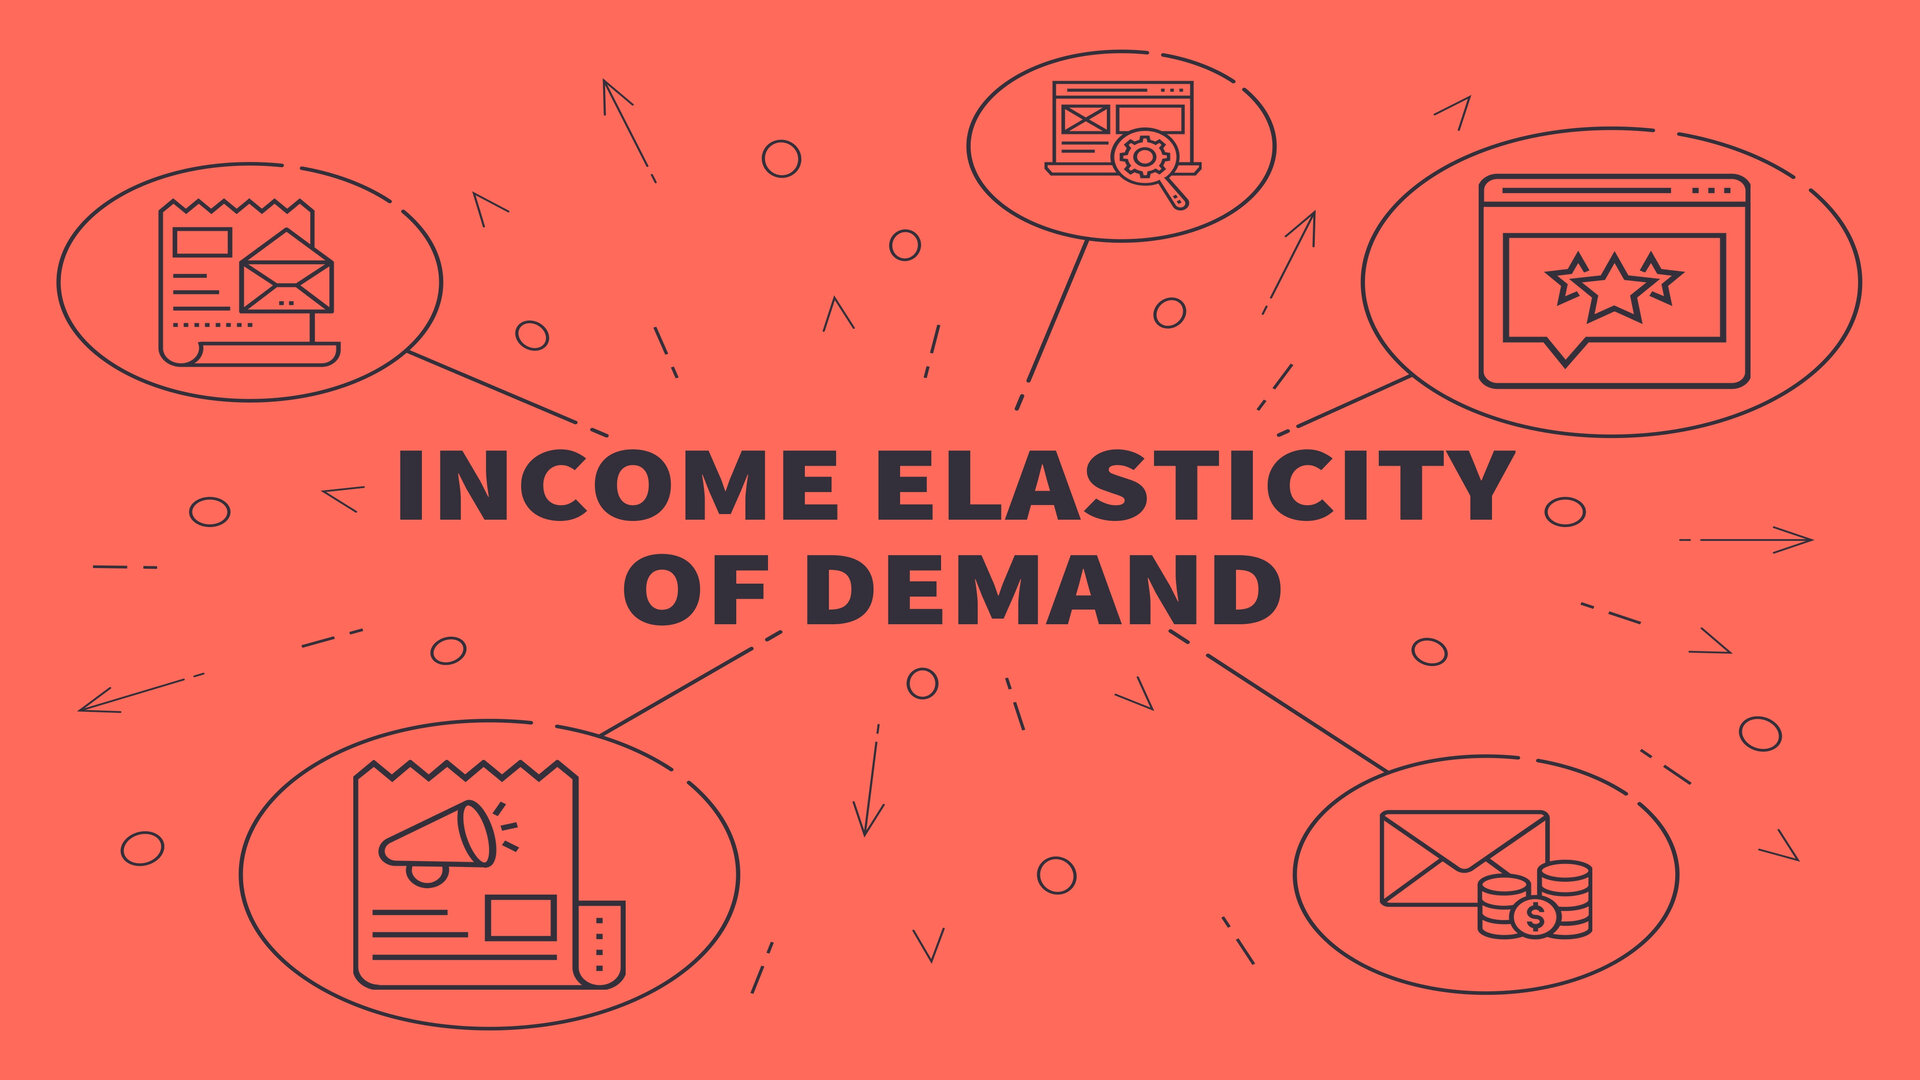 Income Elasticity